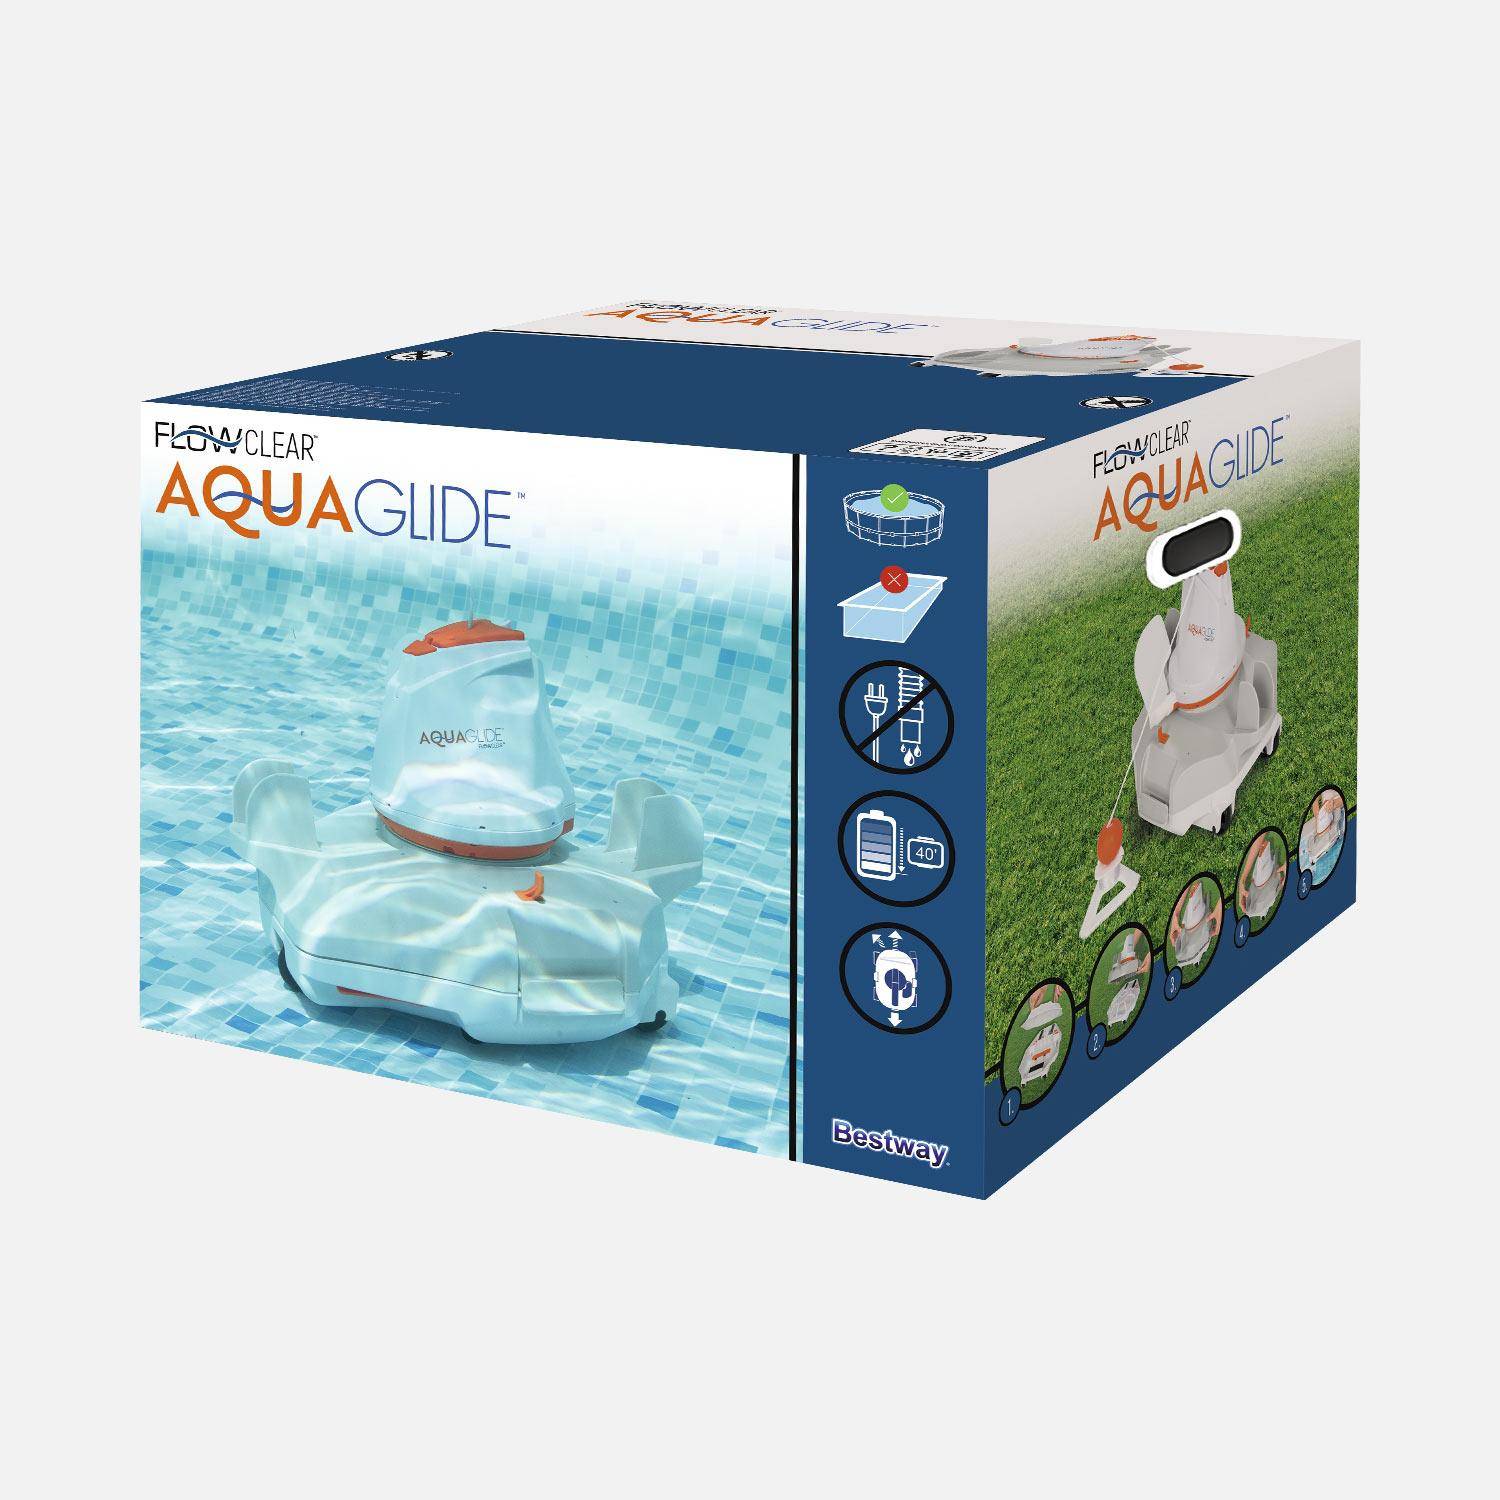 Autonome Flowclear aquaglide robot zwembadreiniger voor zwembaden met een vlakke vloer tot 20m²,sweeek,Photo6